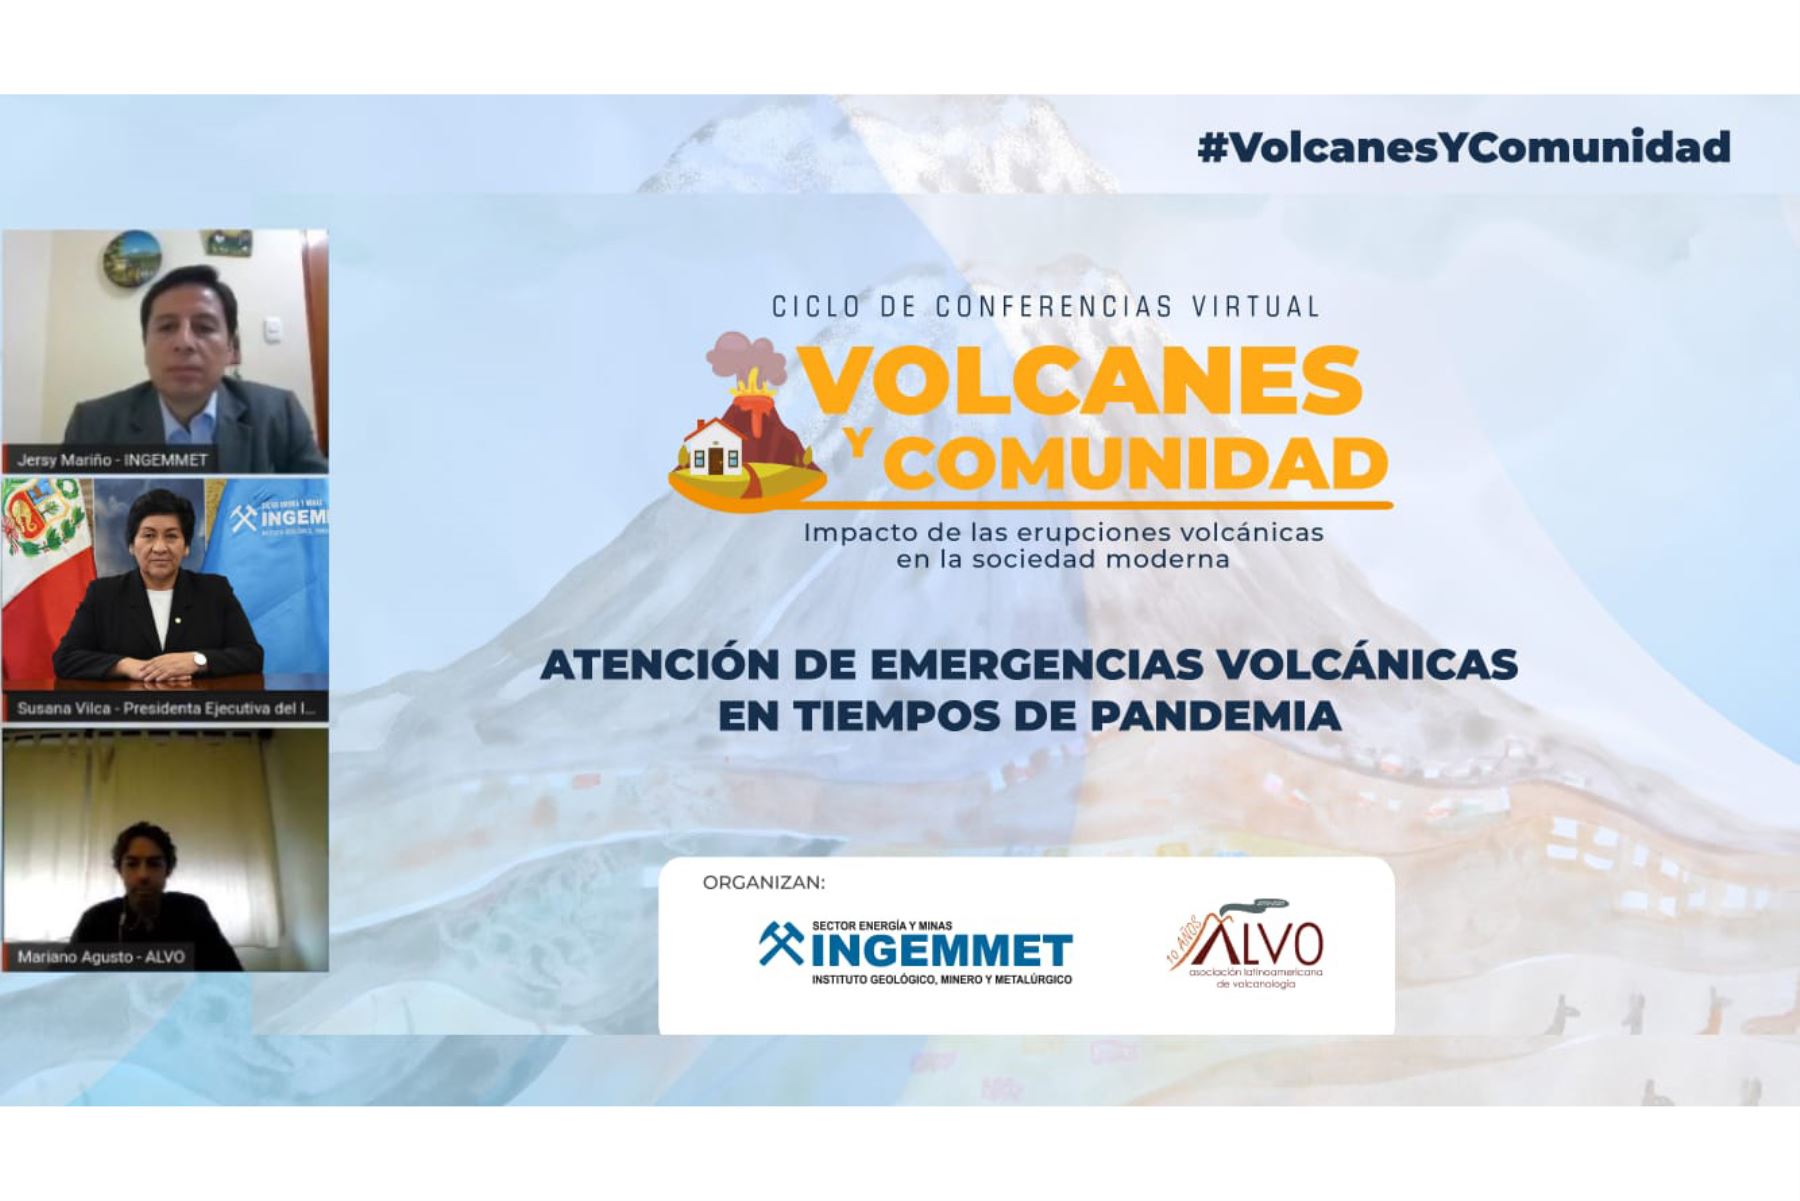 La presidenta ejecutiva del Ingemmet, Susana Vilca, inauguró el ciclo de conferencias “Volcanes y comunidad: impacto de las erupciones volcánicas en la sociedad moderna”. Foto: ANDINA/Difusión